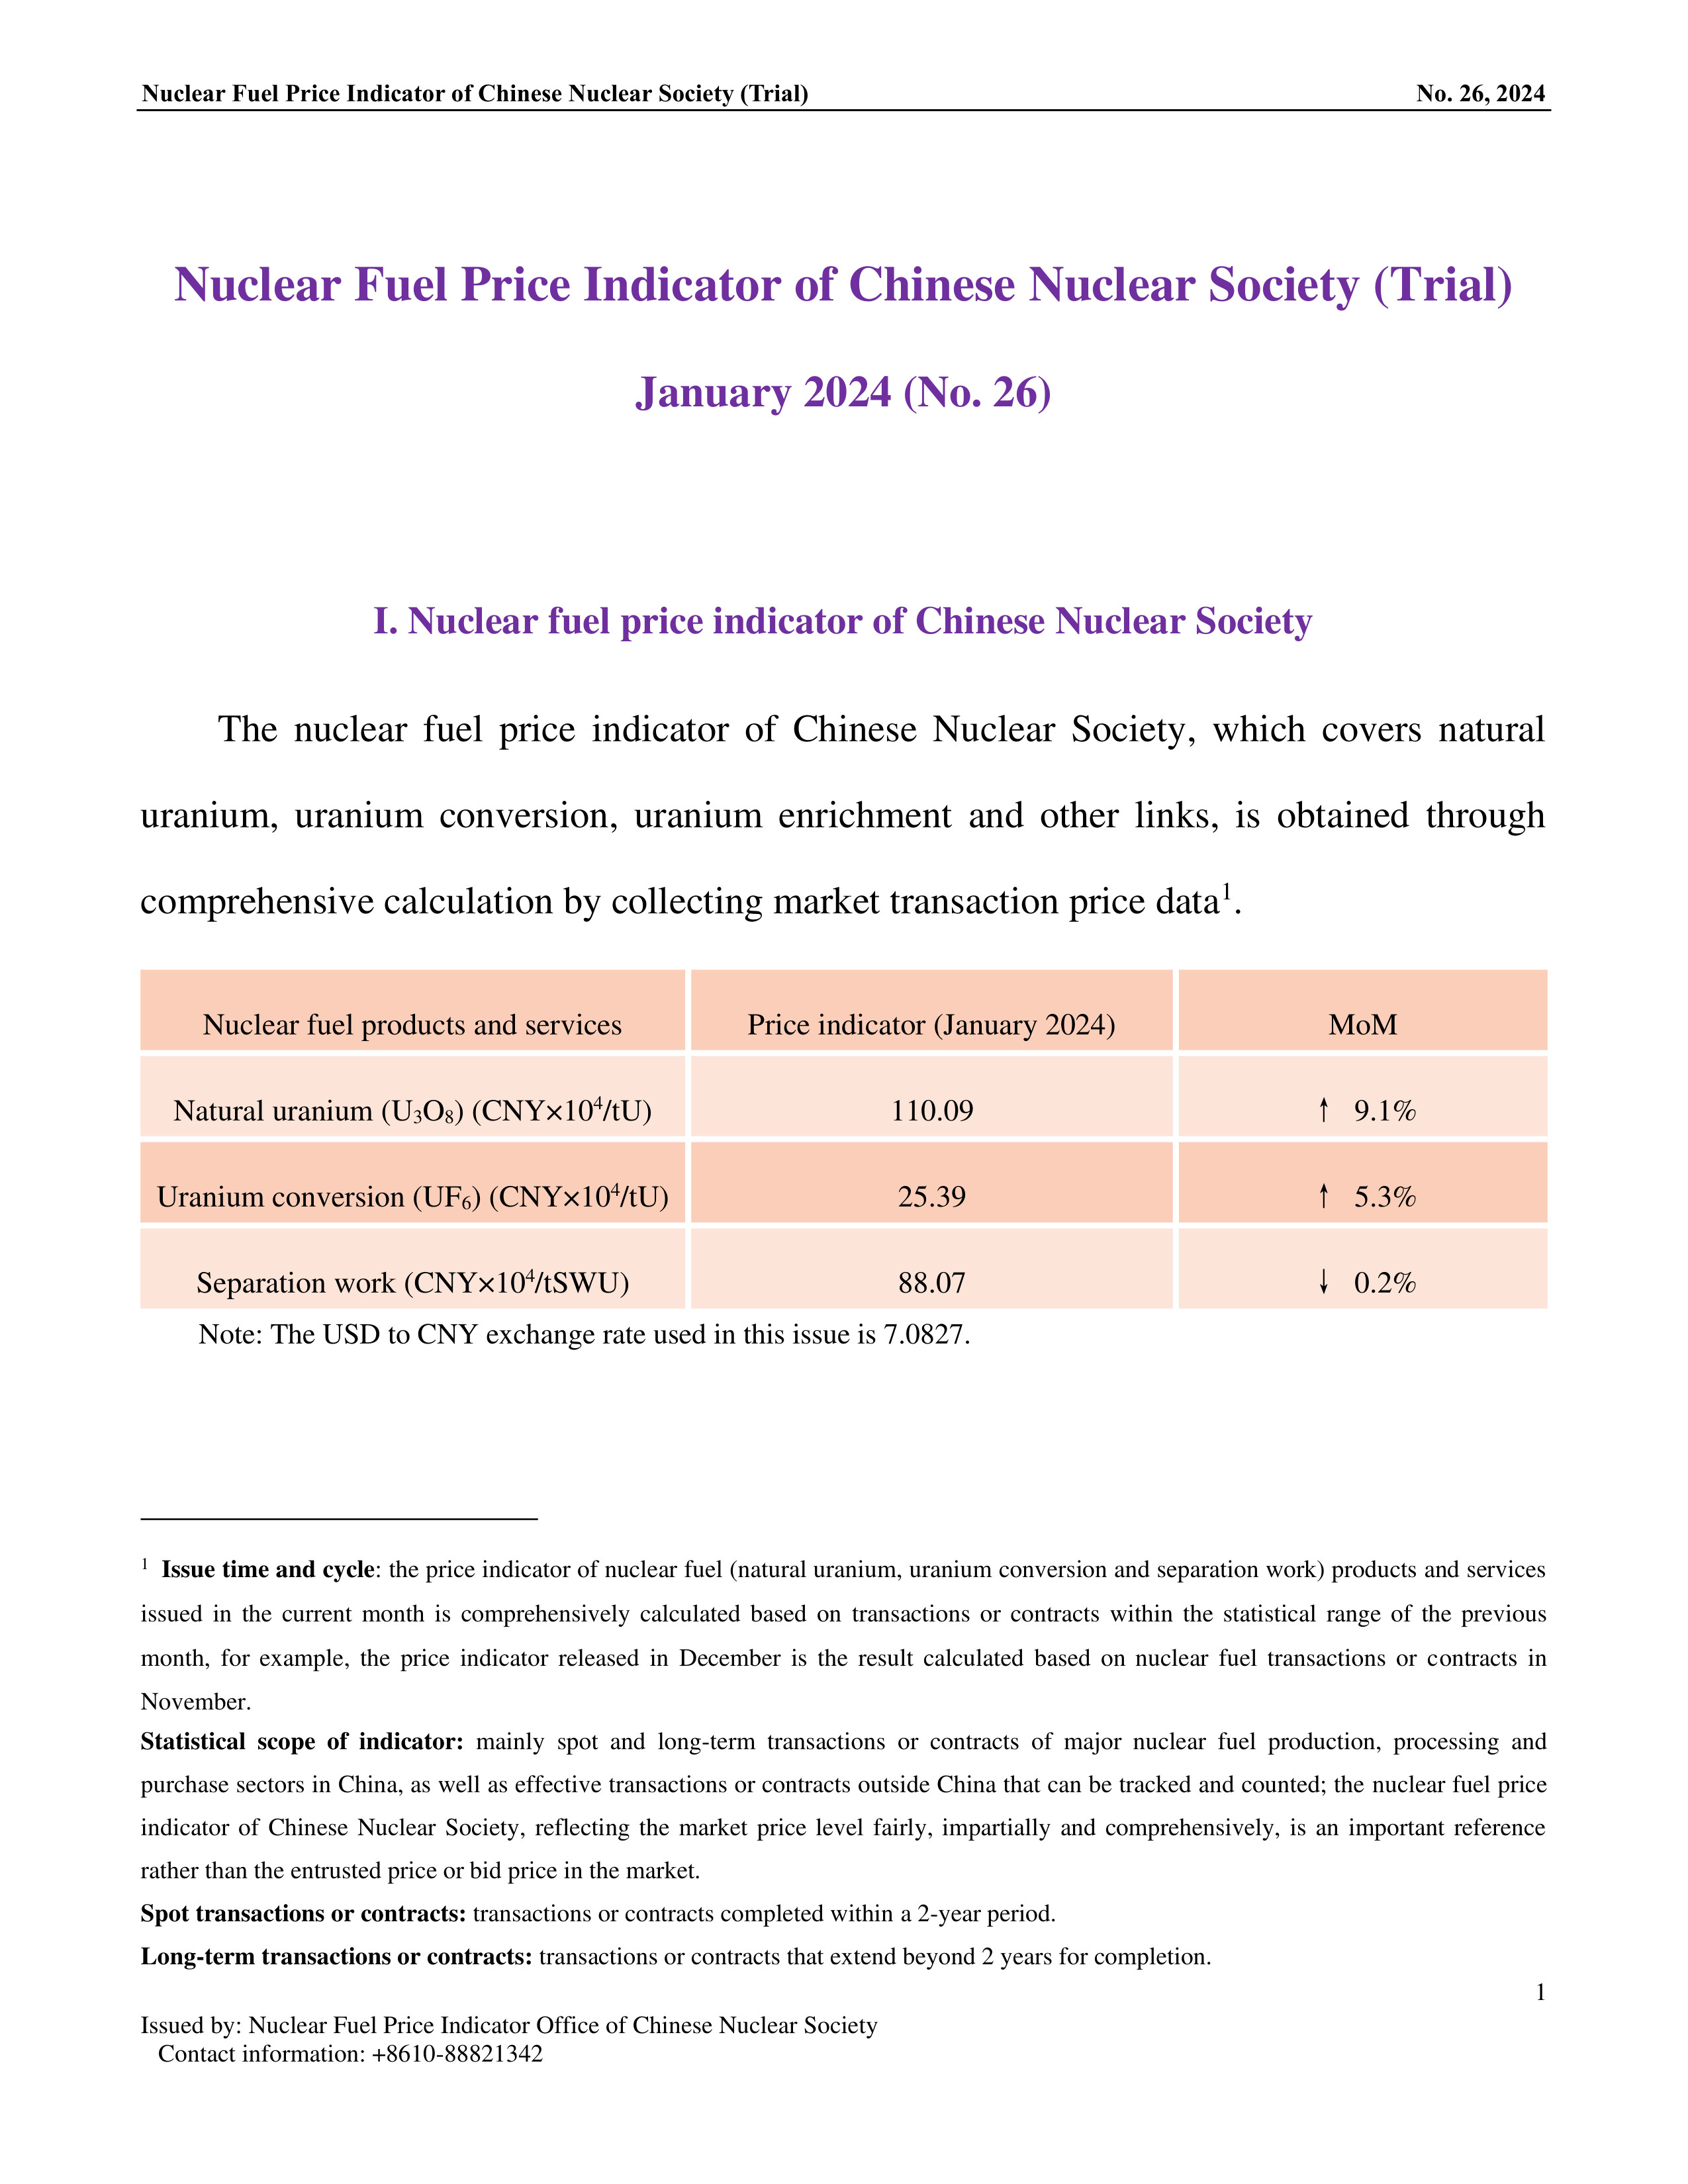 中国核学会核燃料价格指数(试运行)（2024年1月,总第26期）_EN-final-1.jpg